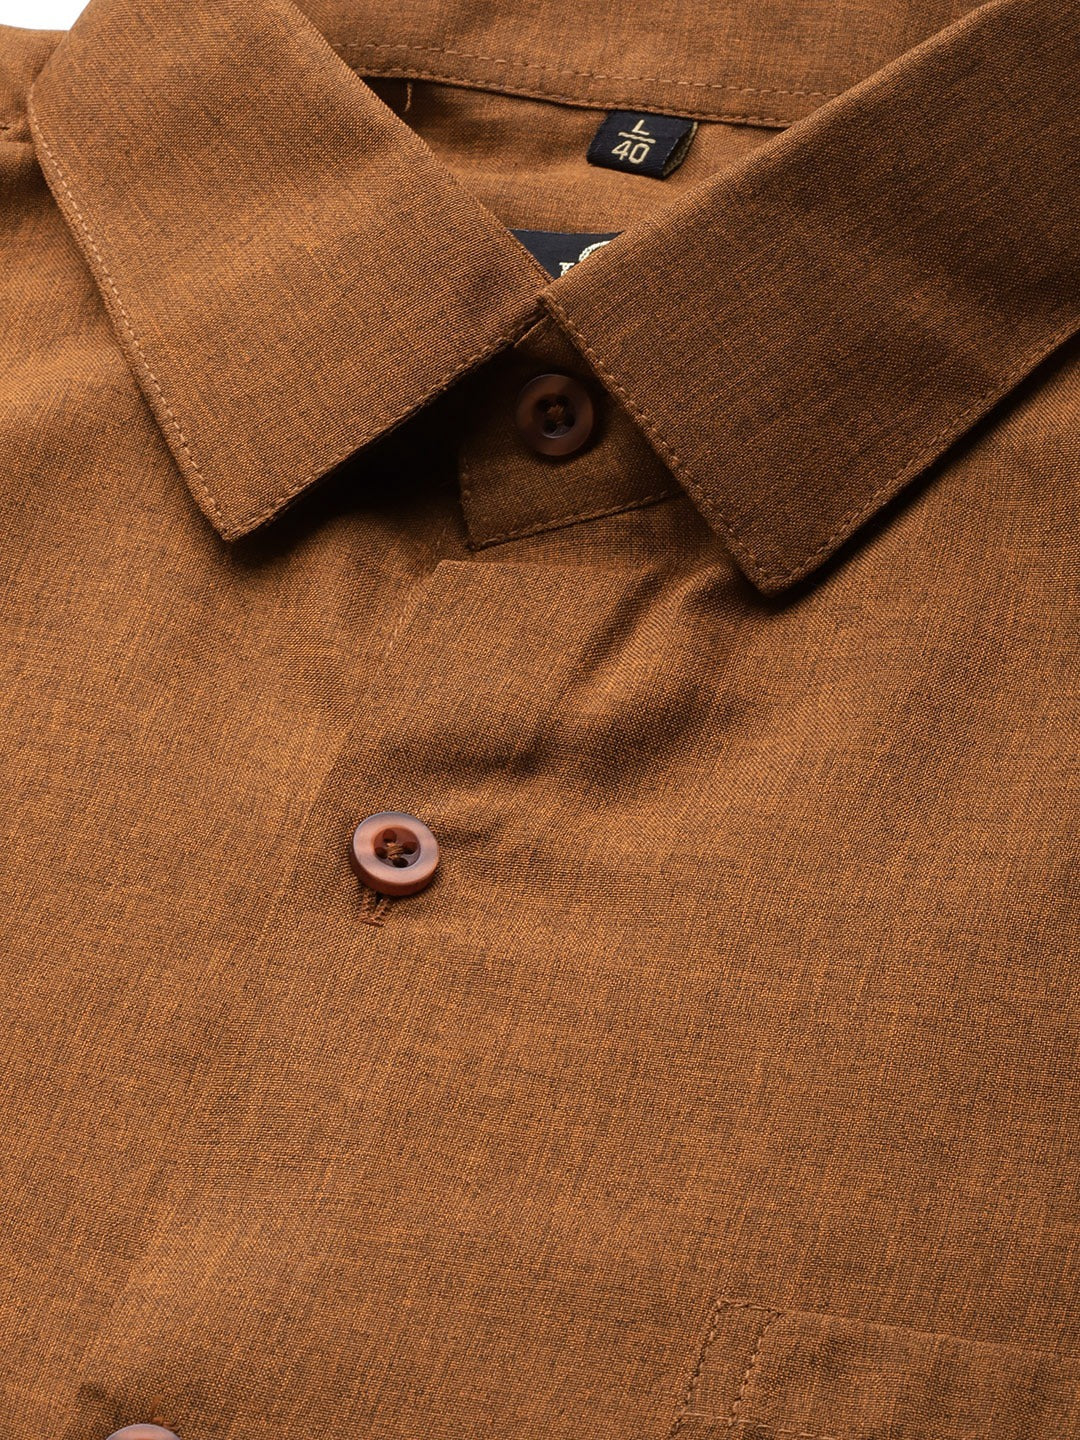 Men's Cotton Copper Casual Shirt